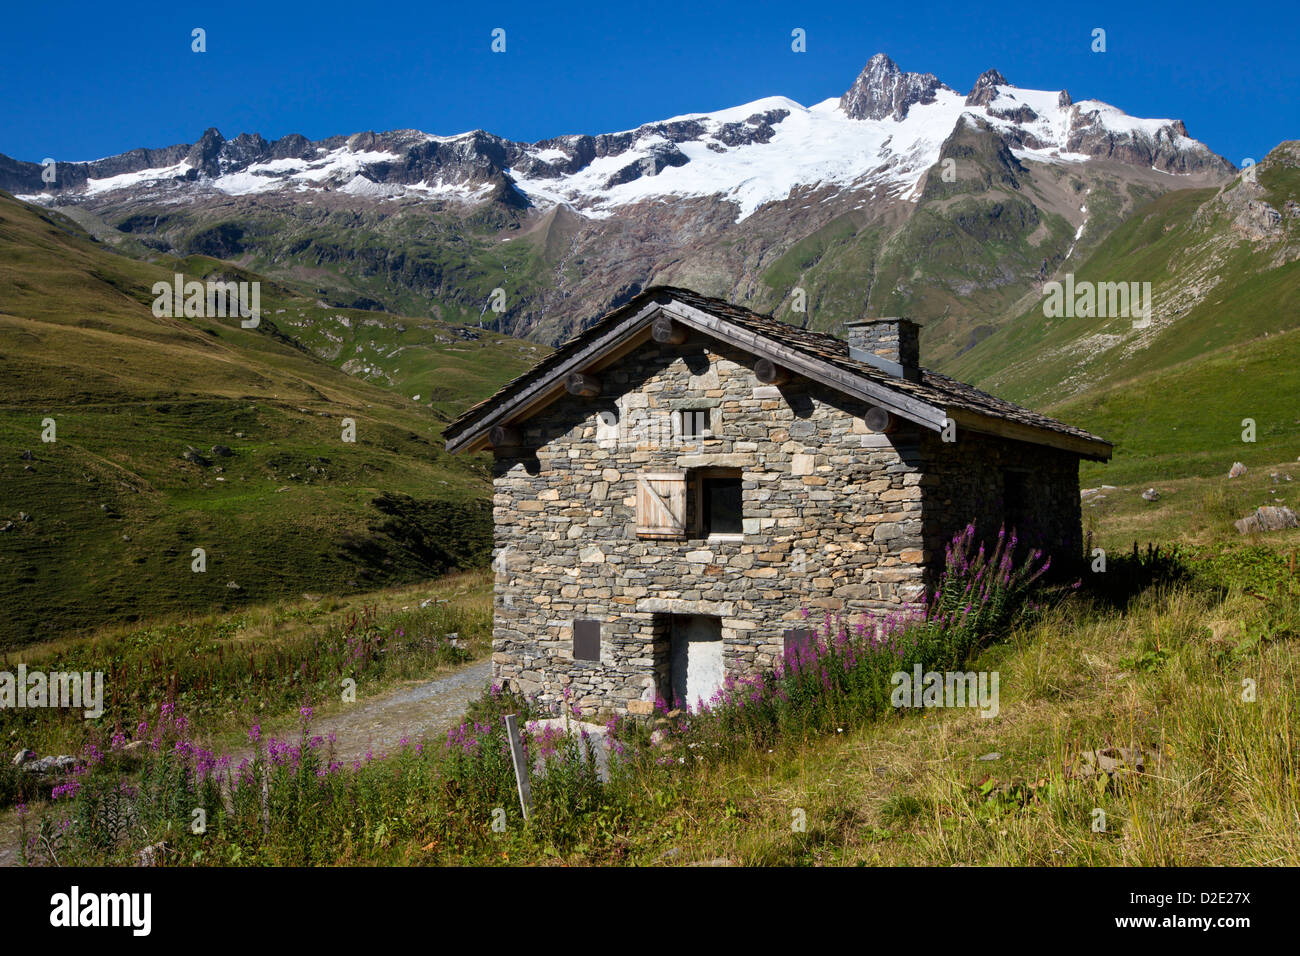 Stone building, Tour de Mont Blanc, French Alps, France. Stock Photo